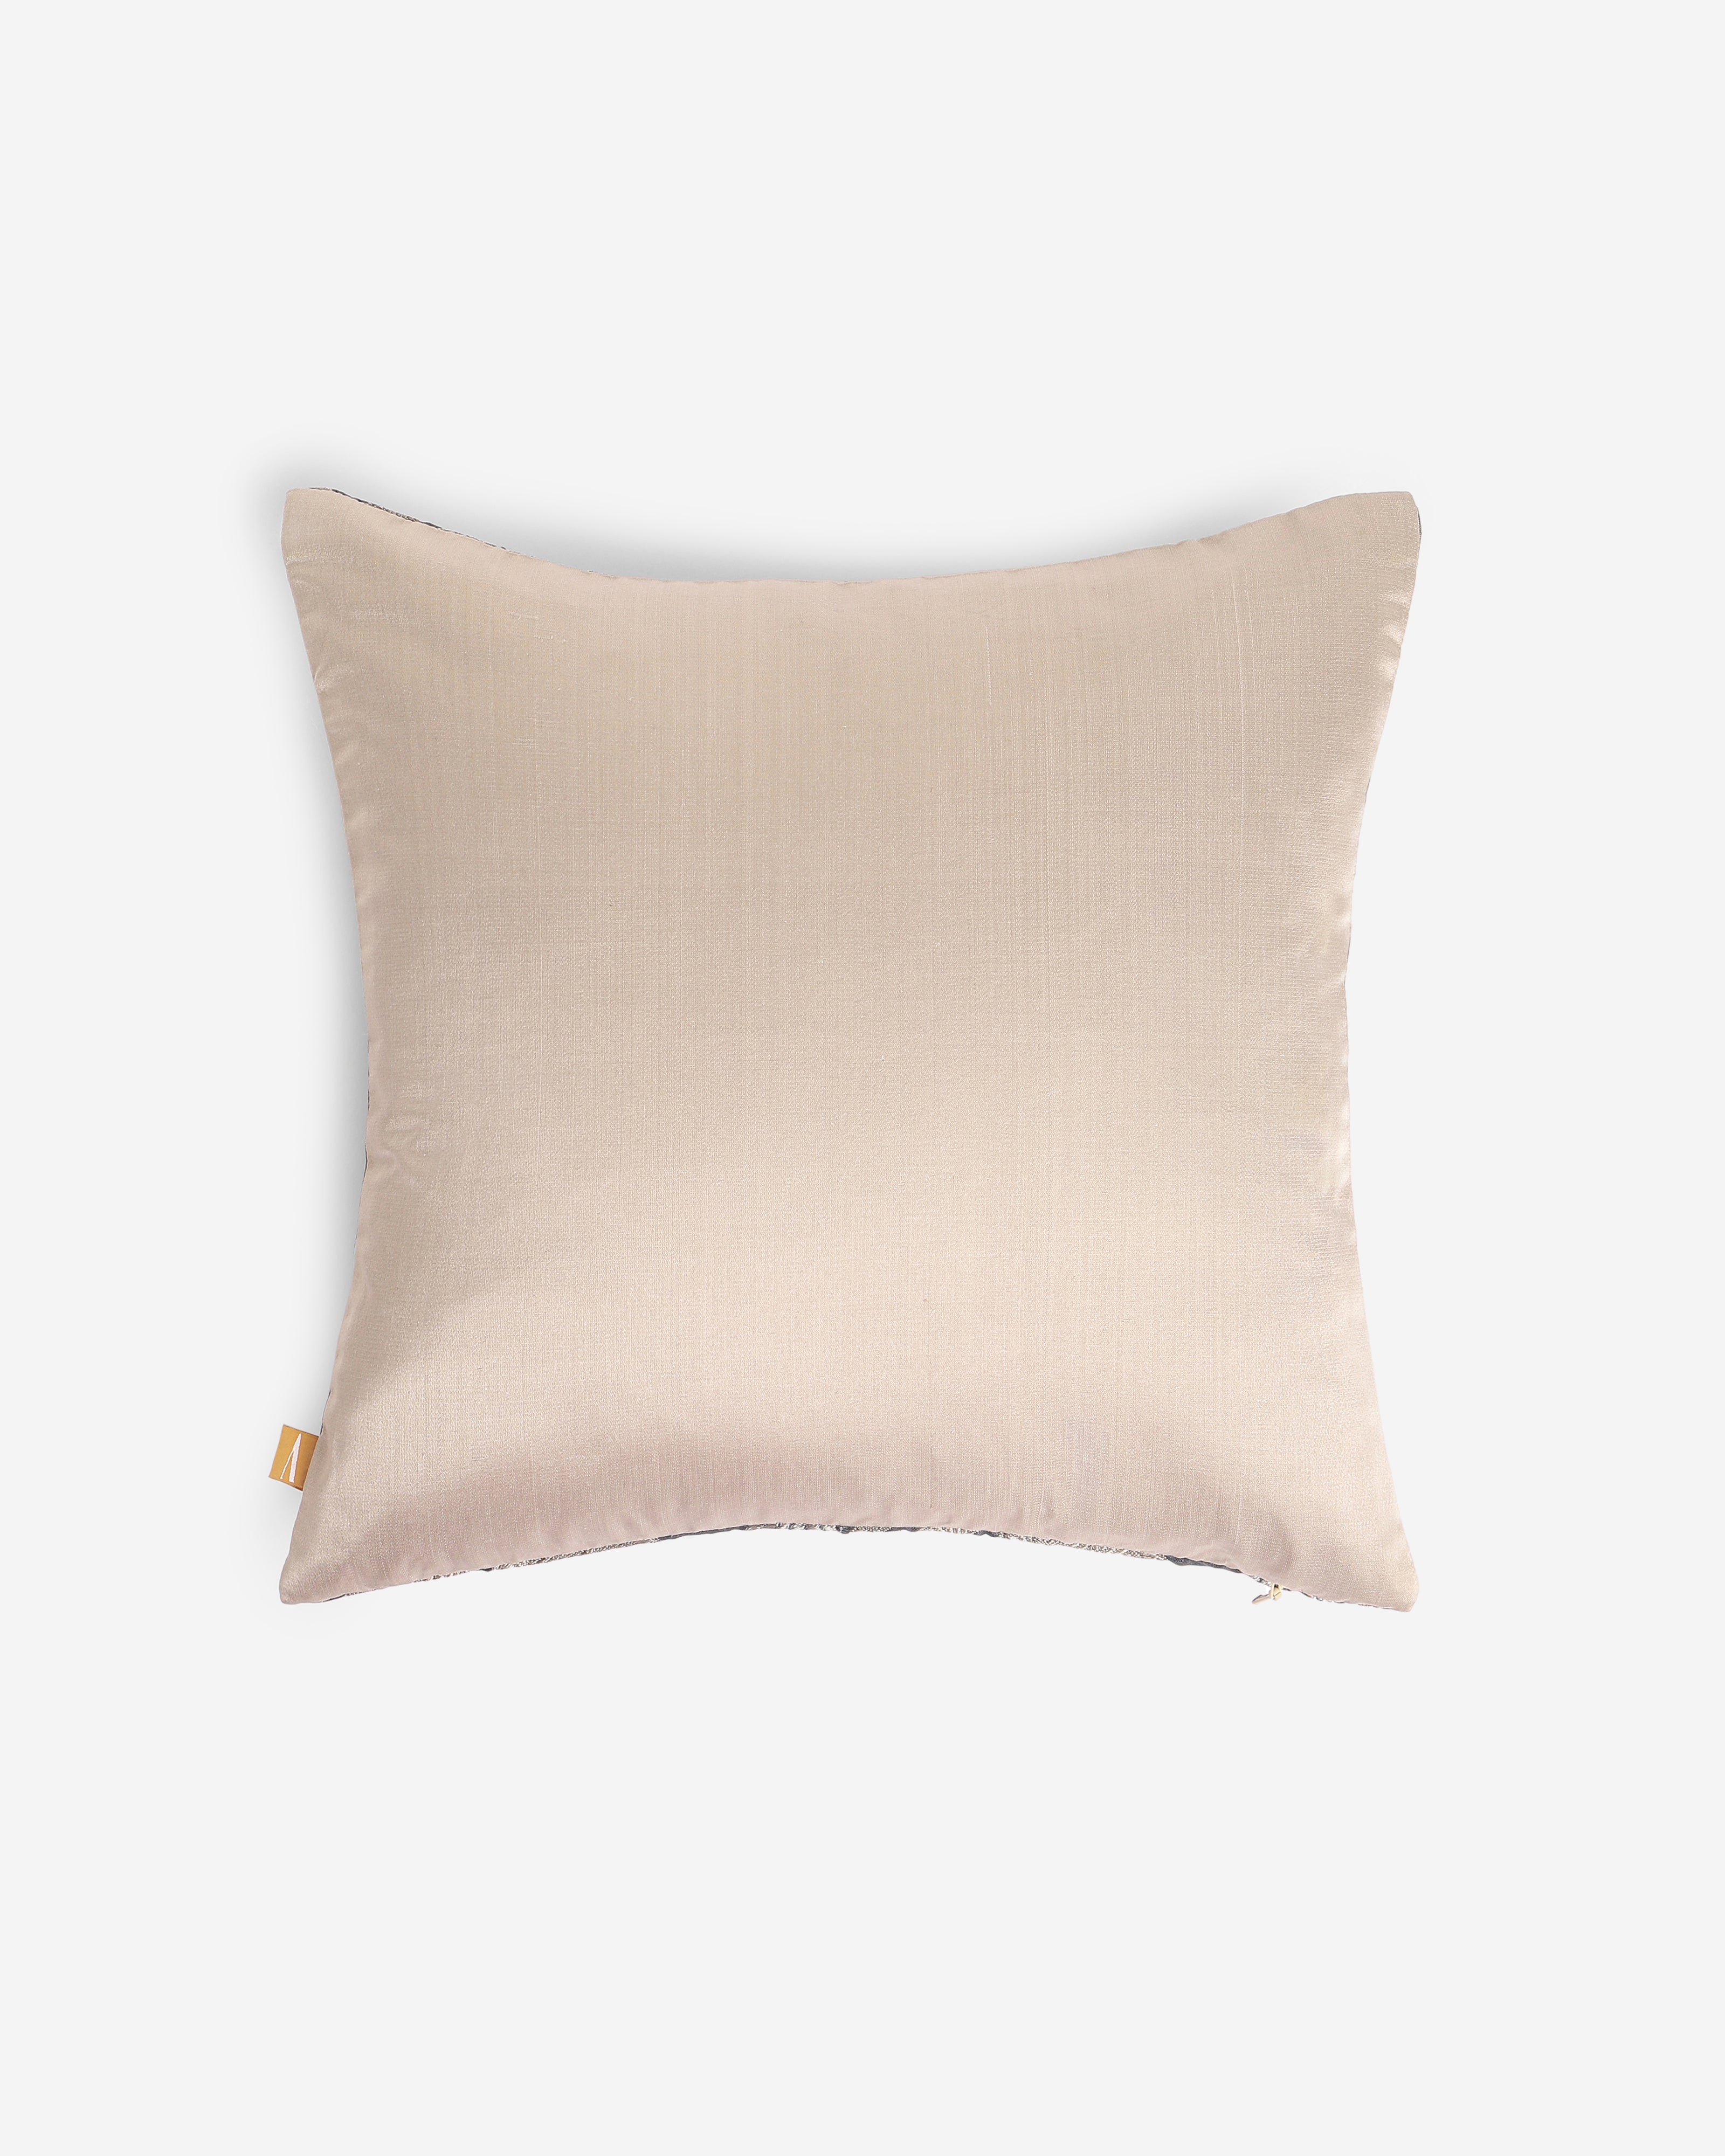 Asoka Satin Brocade Silk Cushion Cover